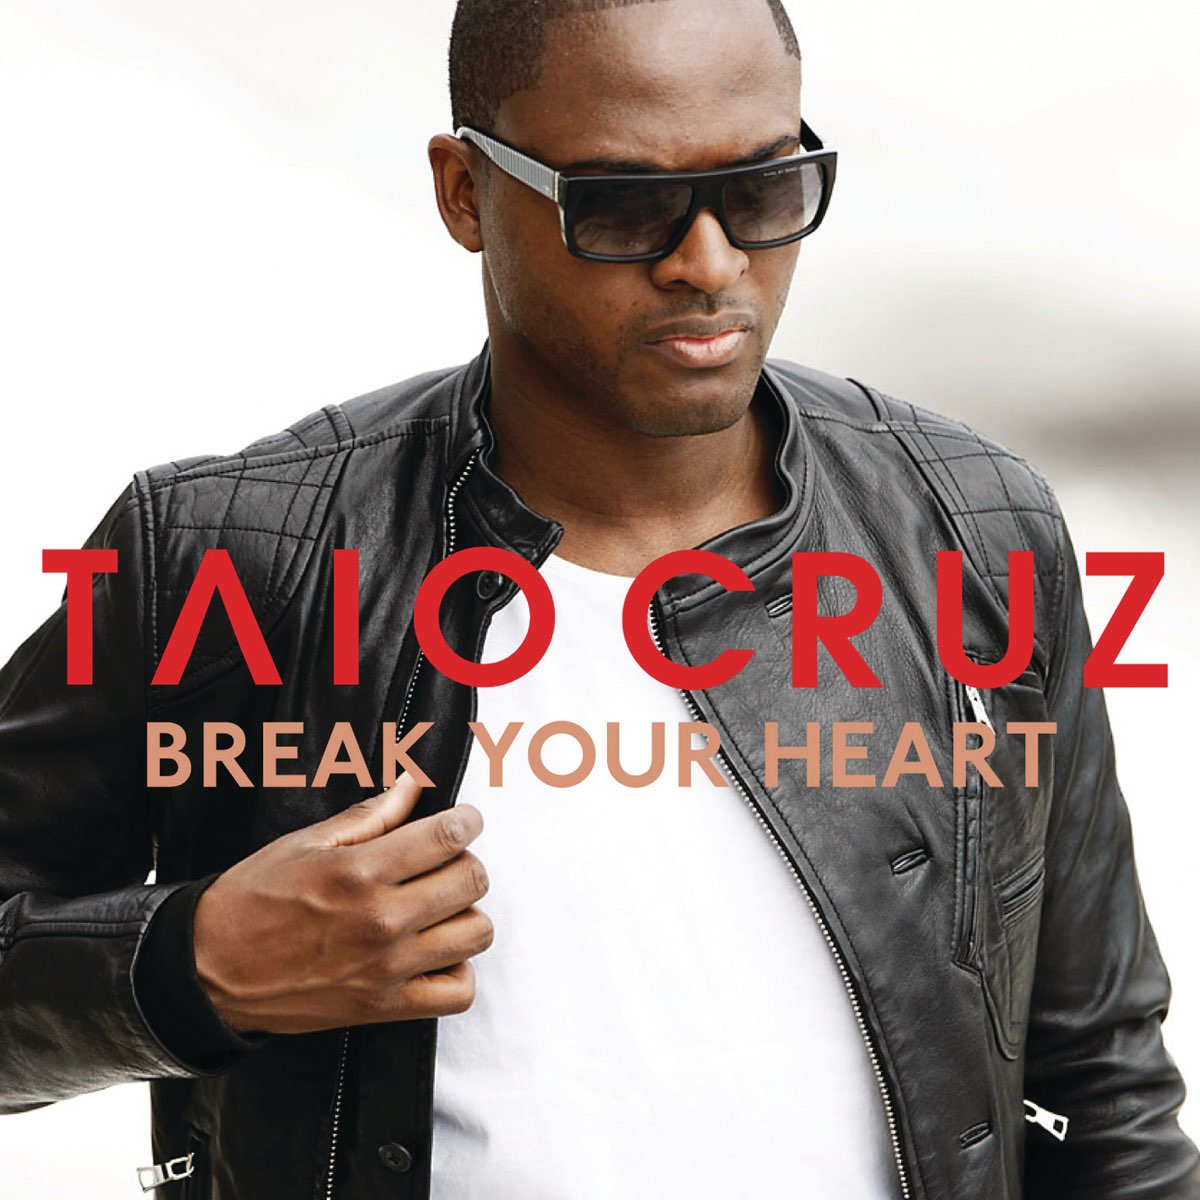 Taio Cruz Break Your Heart cover artwork